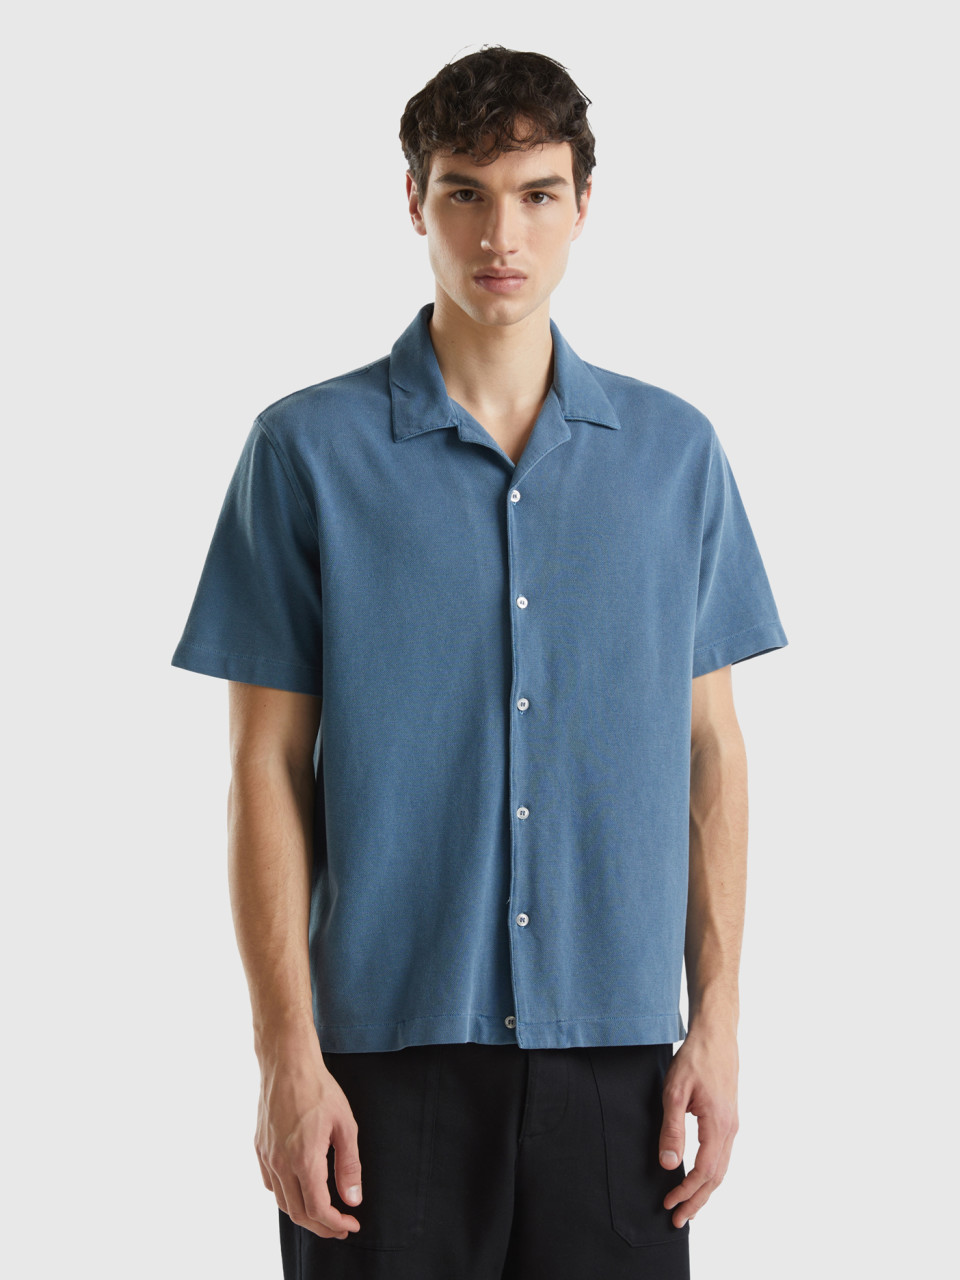 Benetton, Organic Cotton Pique Shirt, Air Force Blue, Men